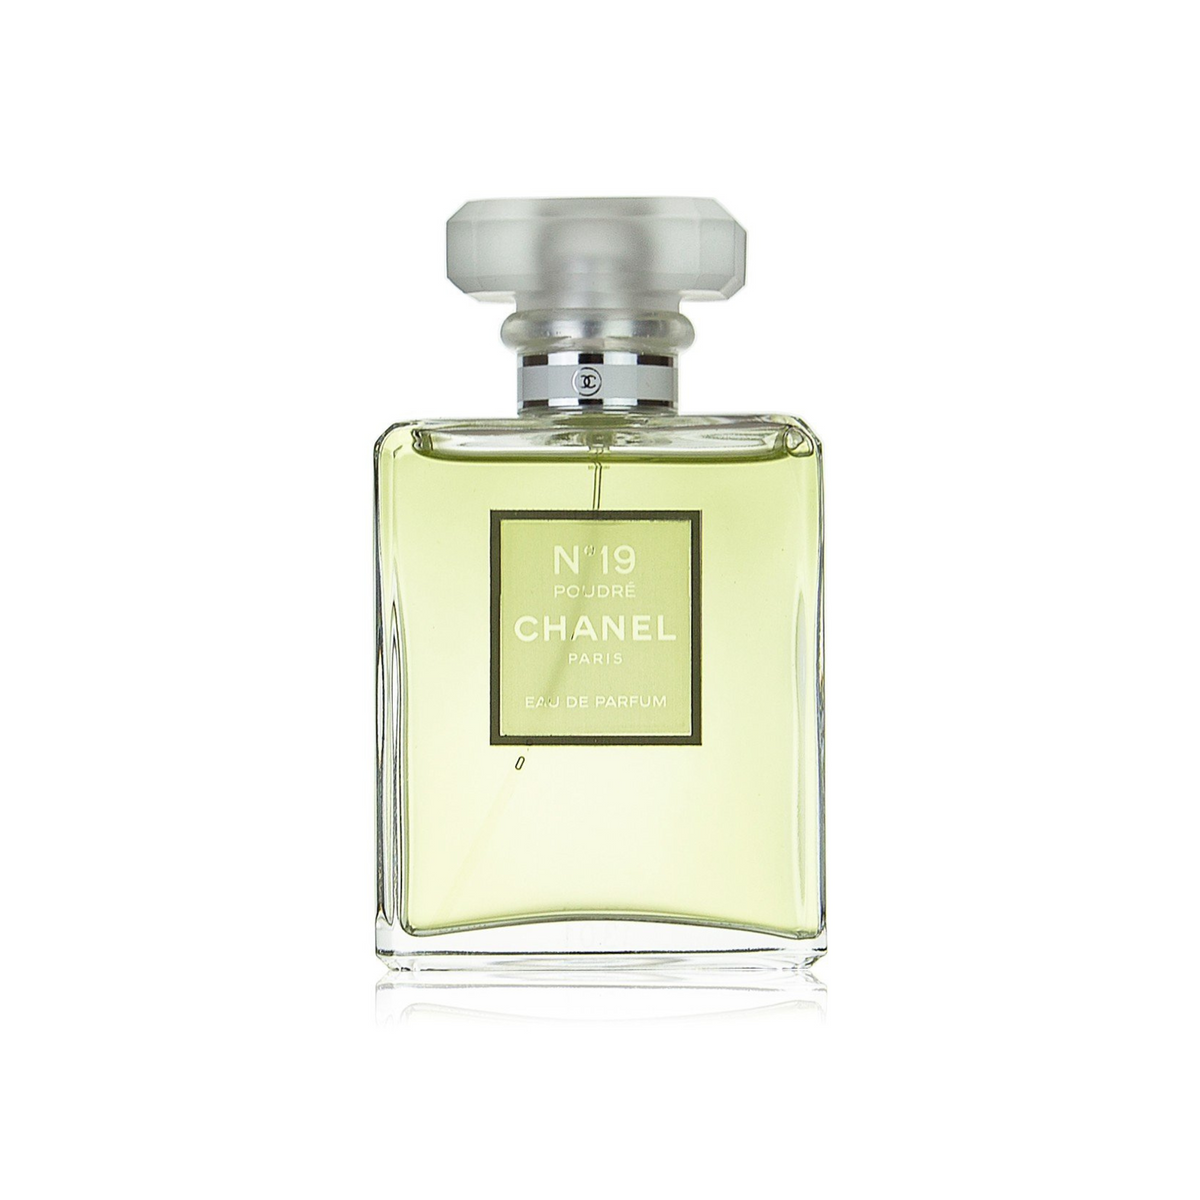 Chanel N°19 Poudré Eau De Parfum For Women